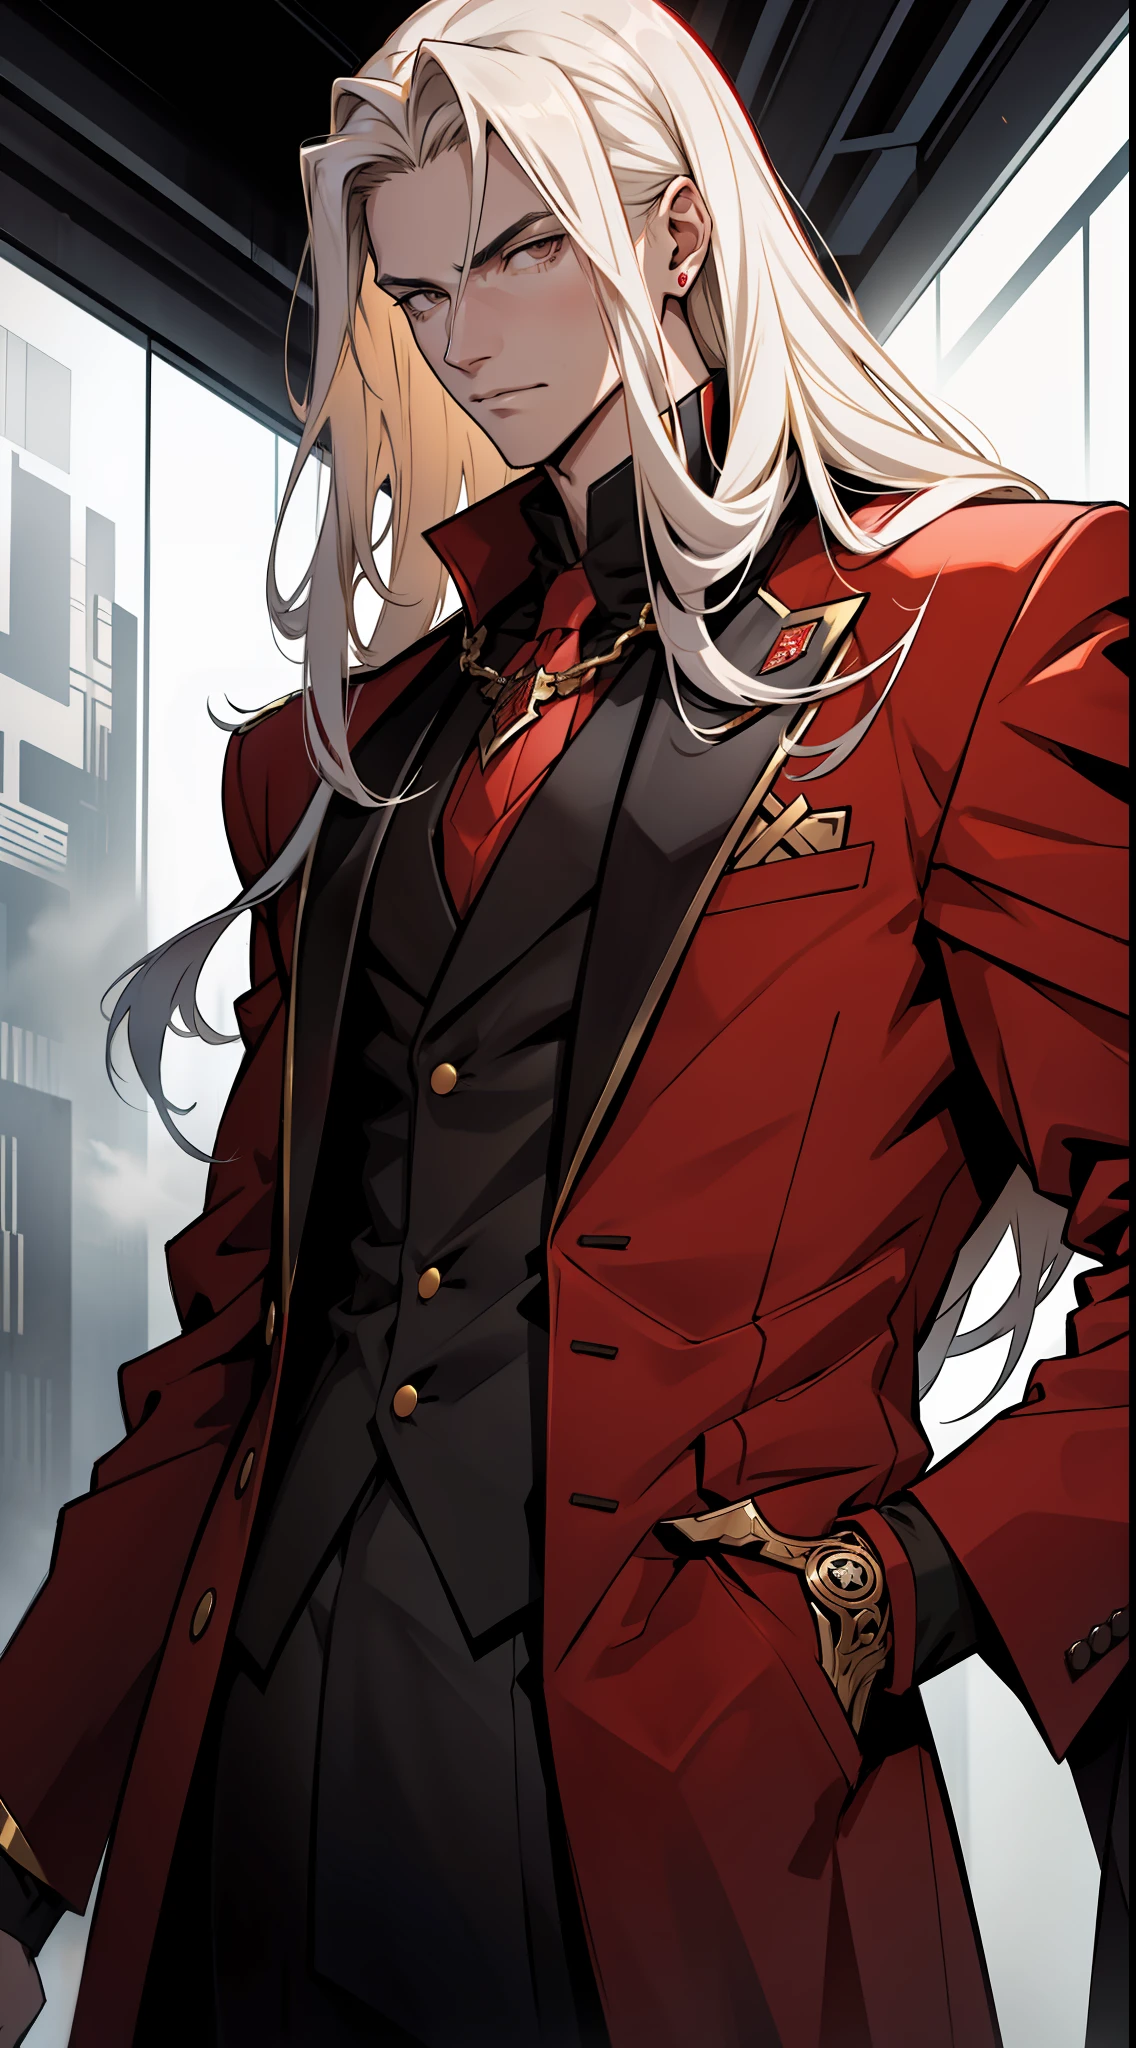 высокий парень-подросток с длинными золотистыми волосами  , носить одежду в стиле злодея, длинный красный костюм с черно-белыми деталями , спокойное лицо